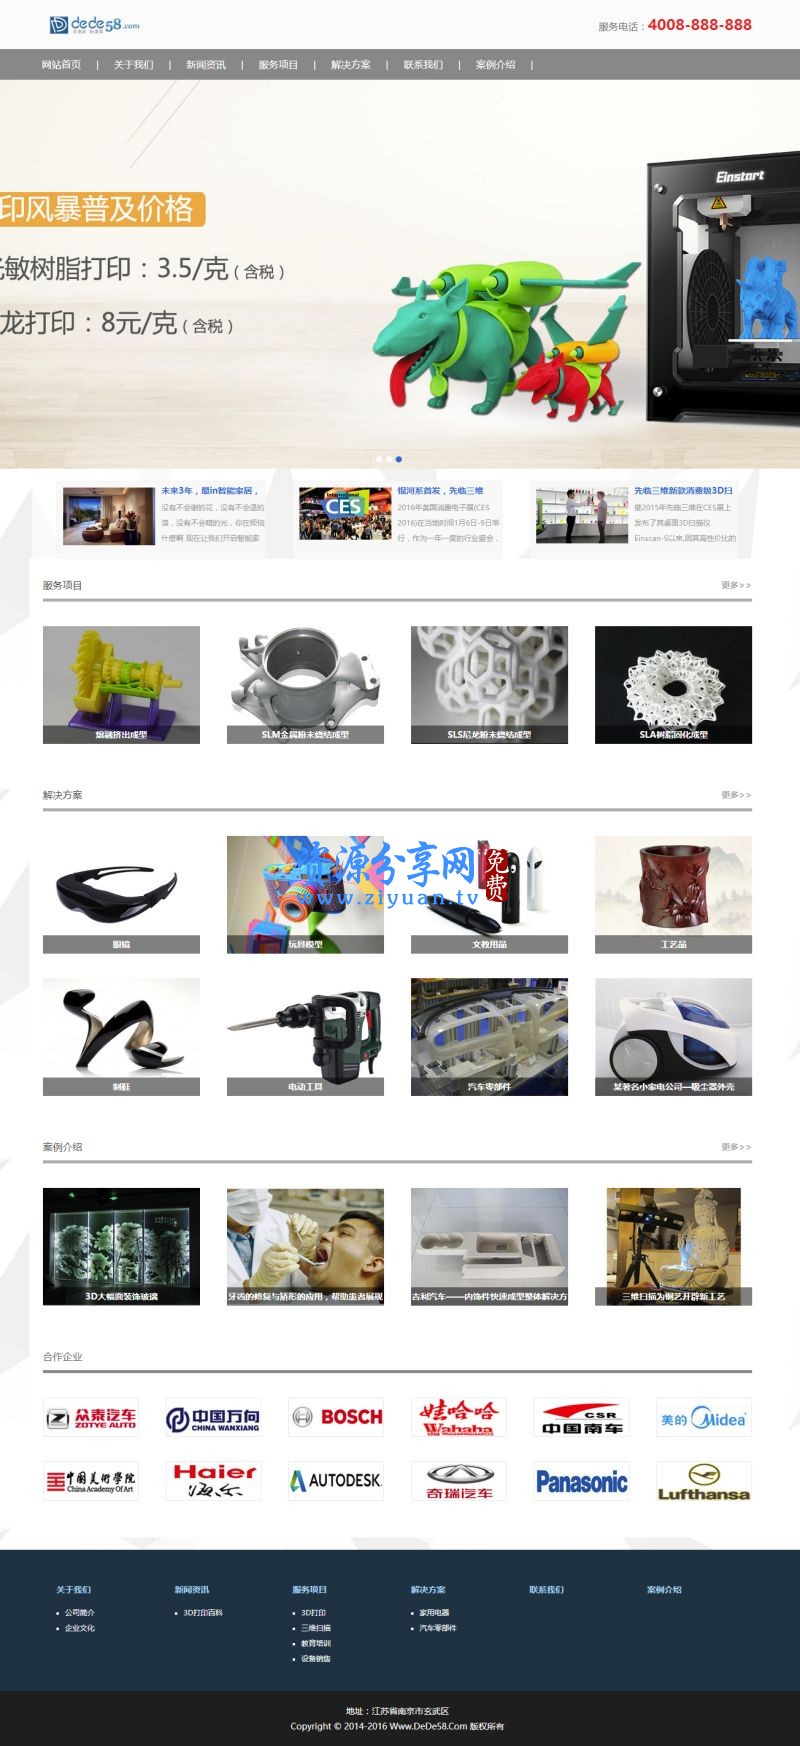 织梦响应式 3D 打印设备公司网站源码模板